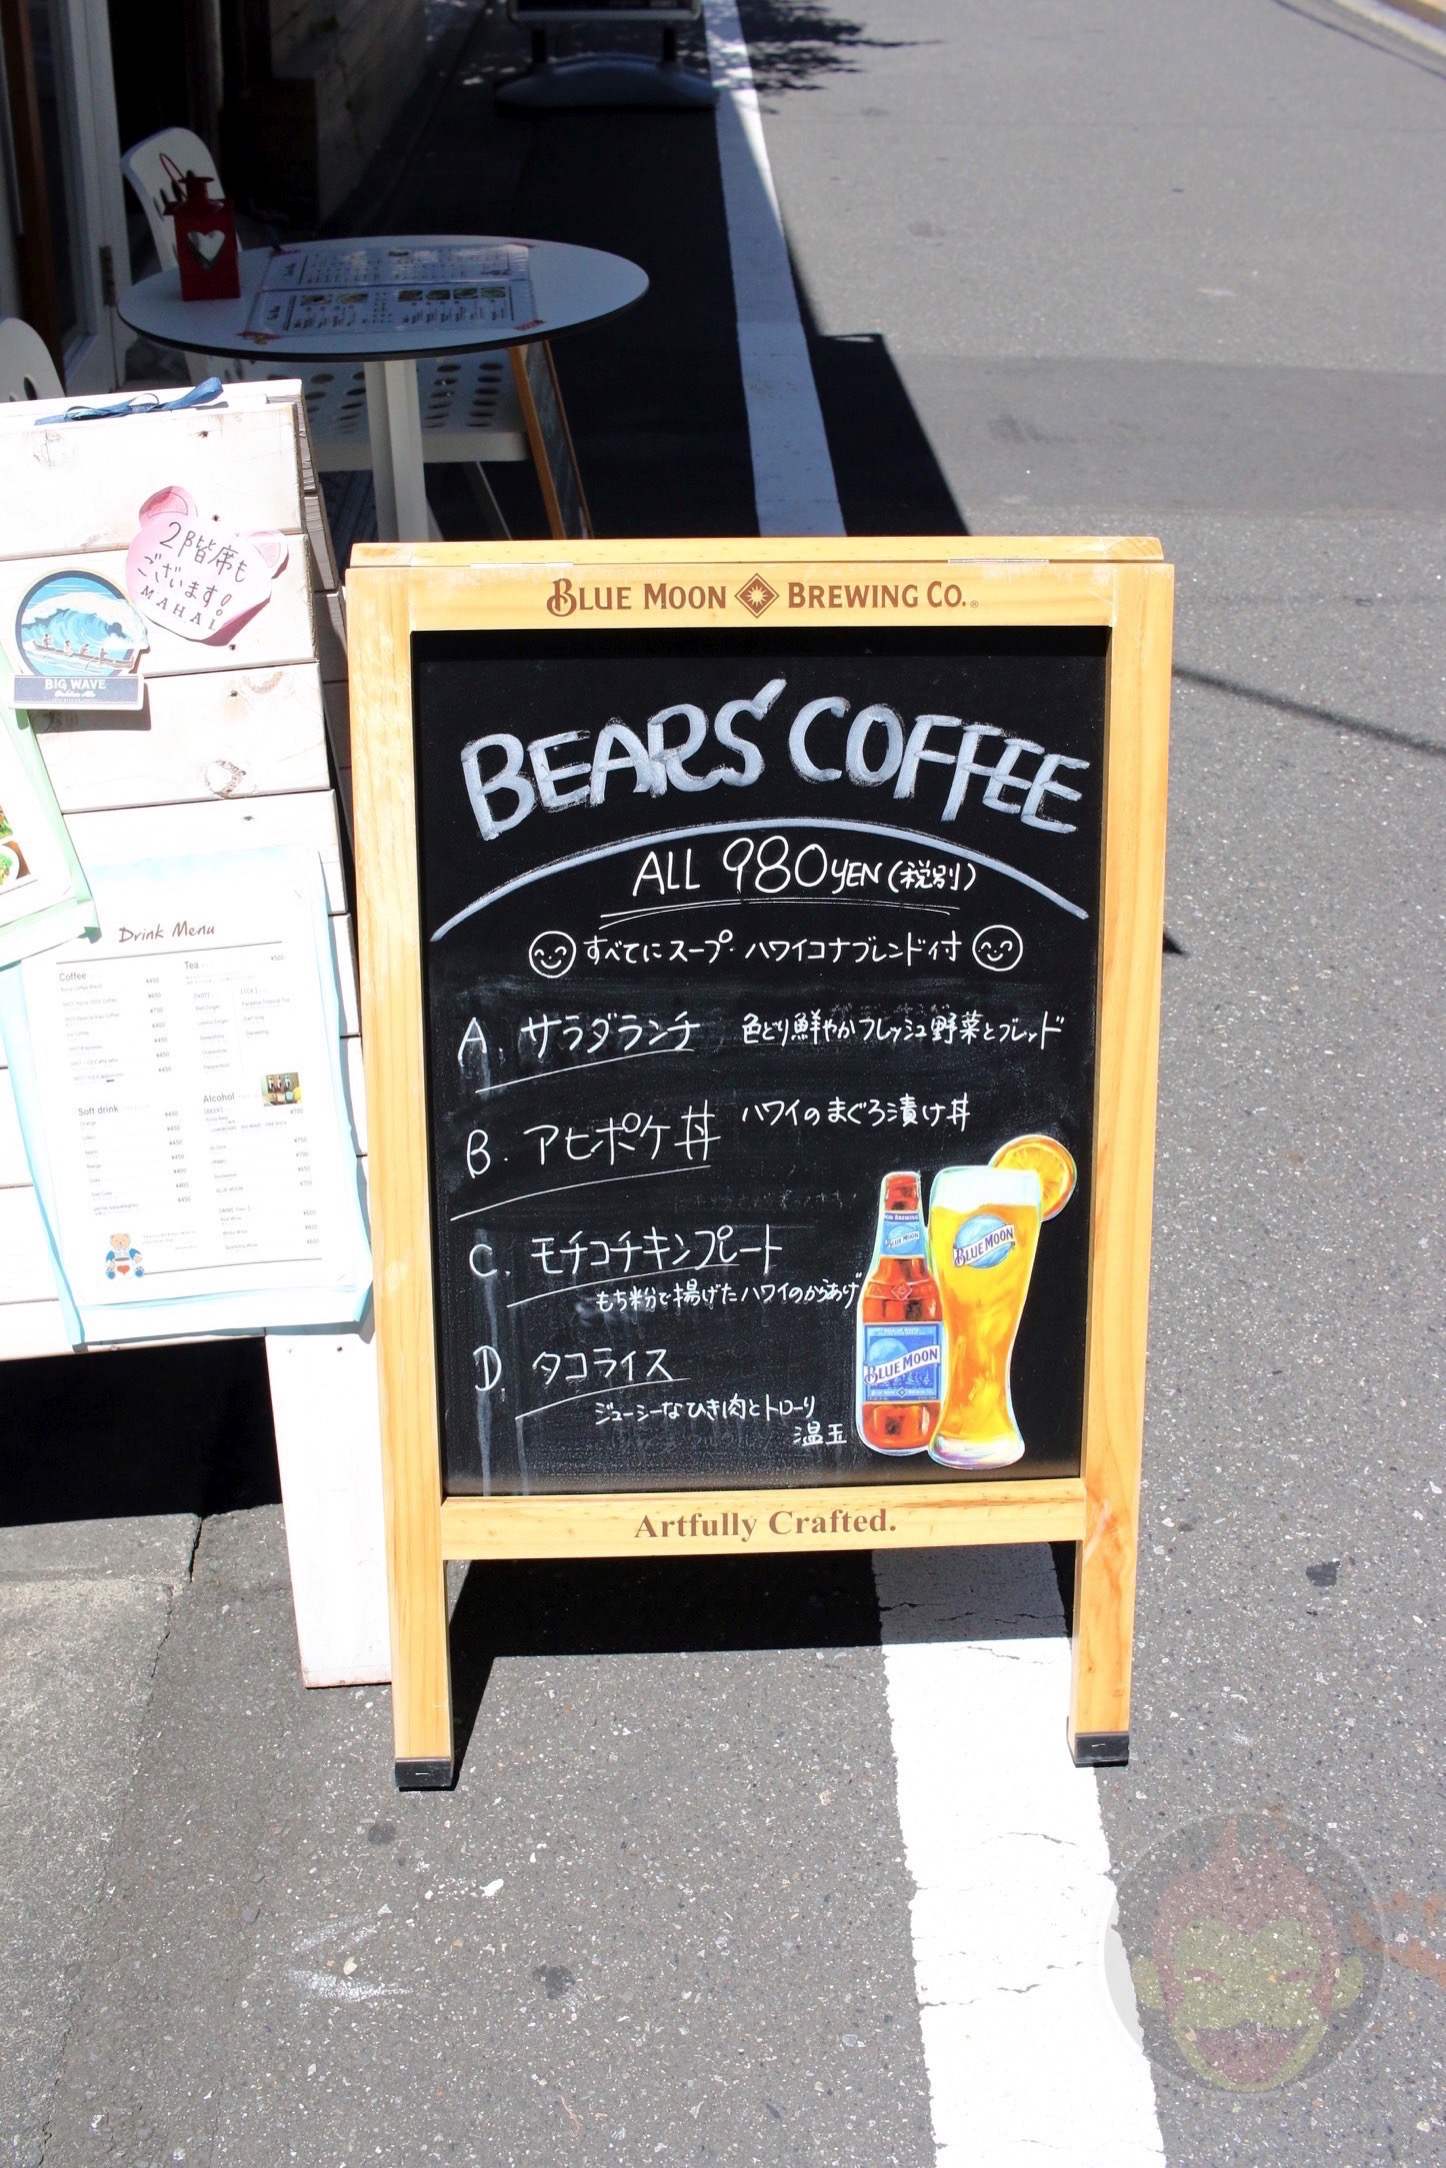 Bears-Coffee-Pancakes-01.JPG